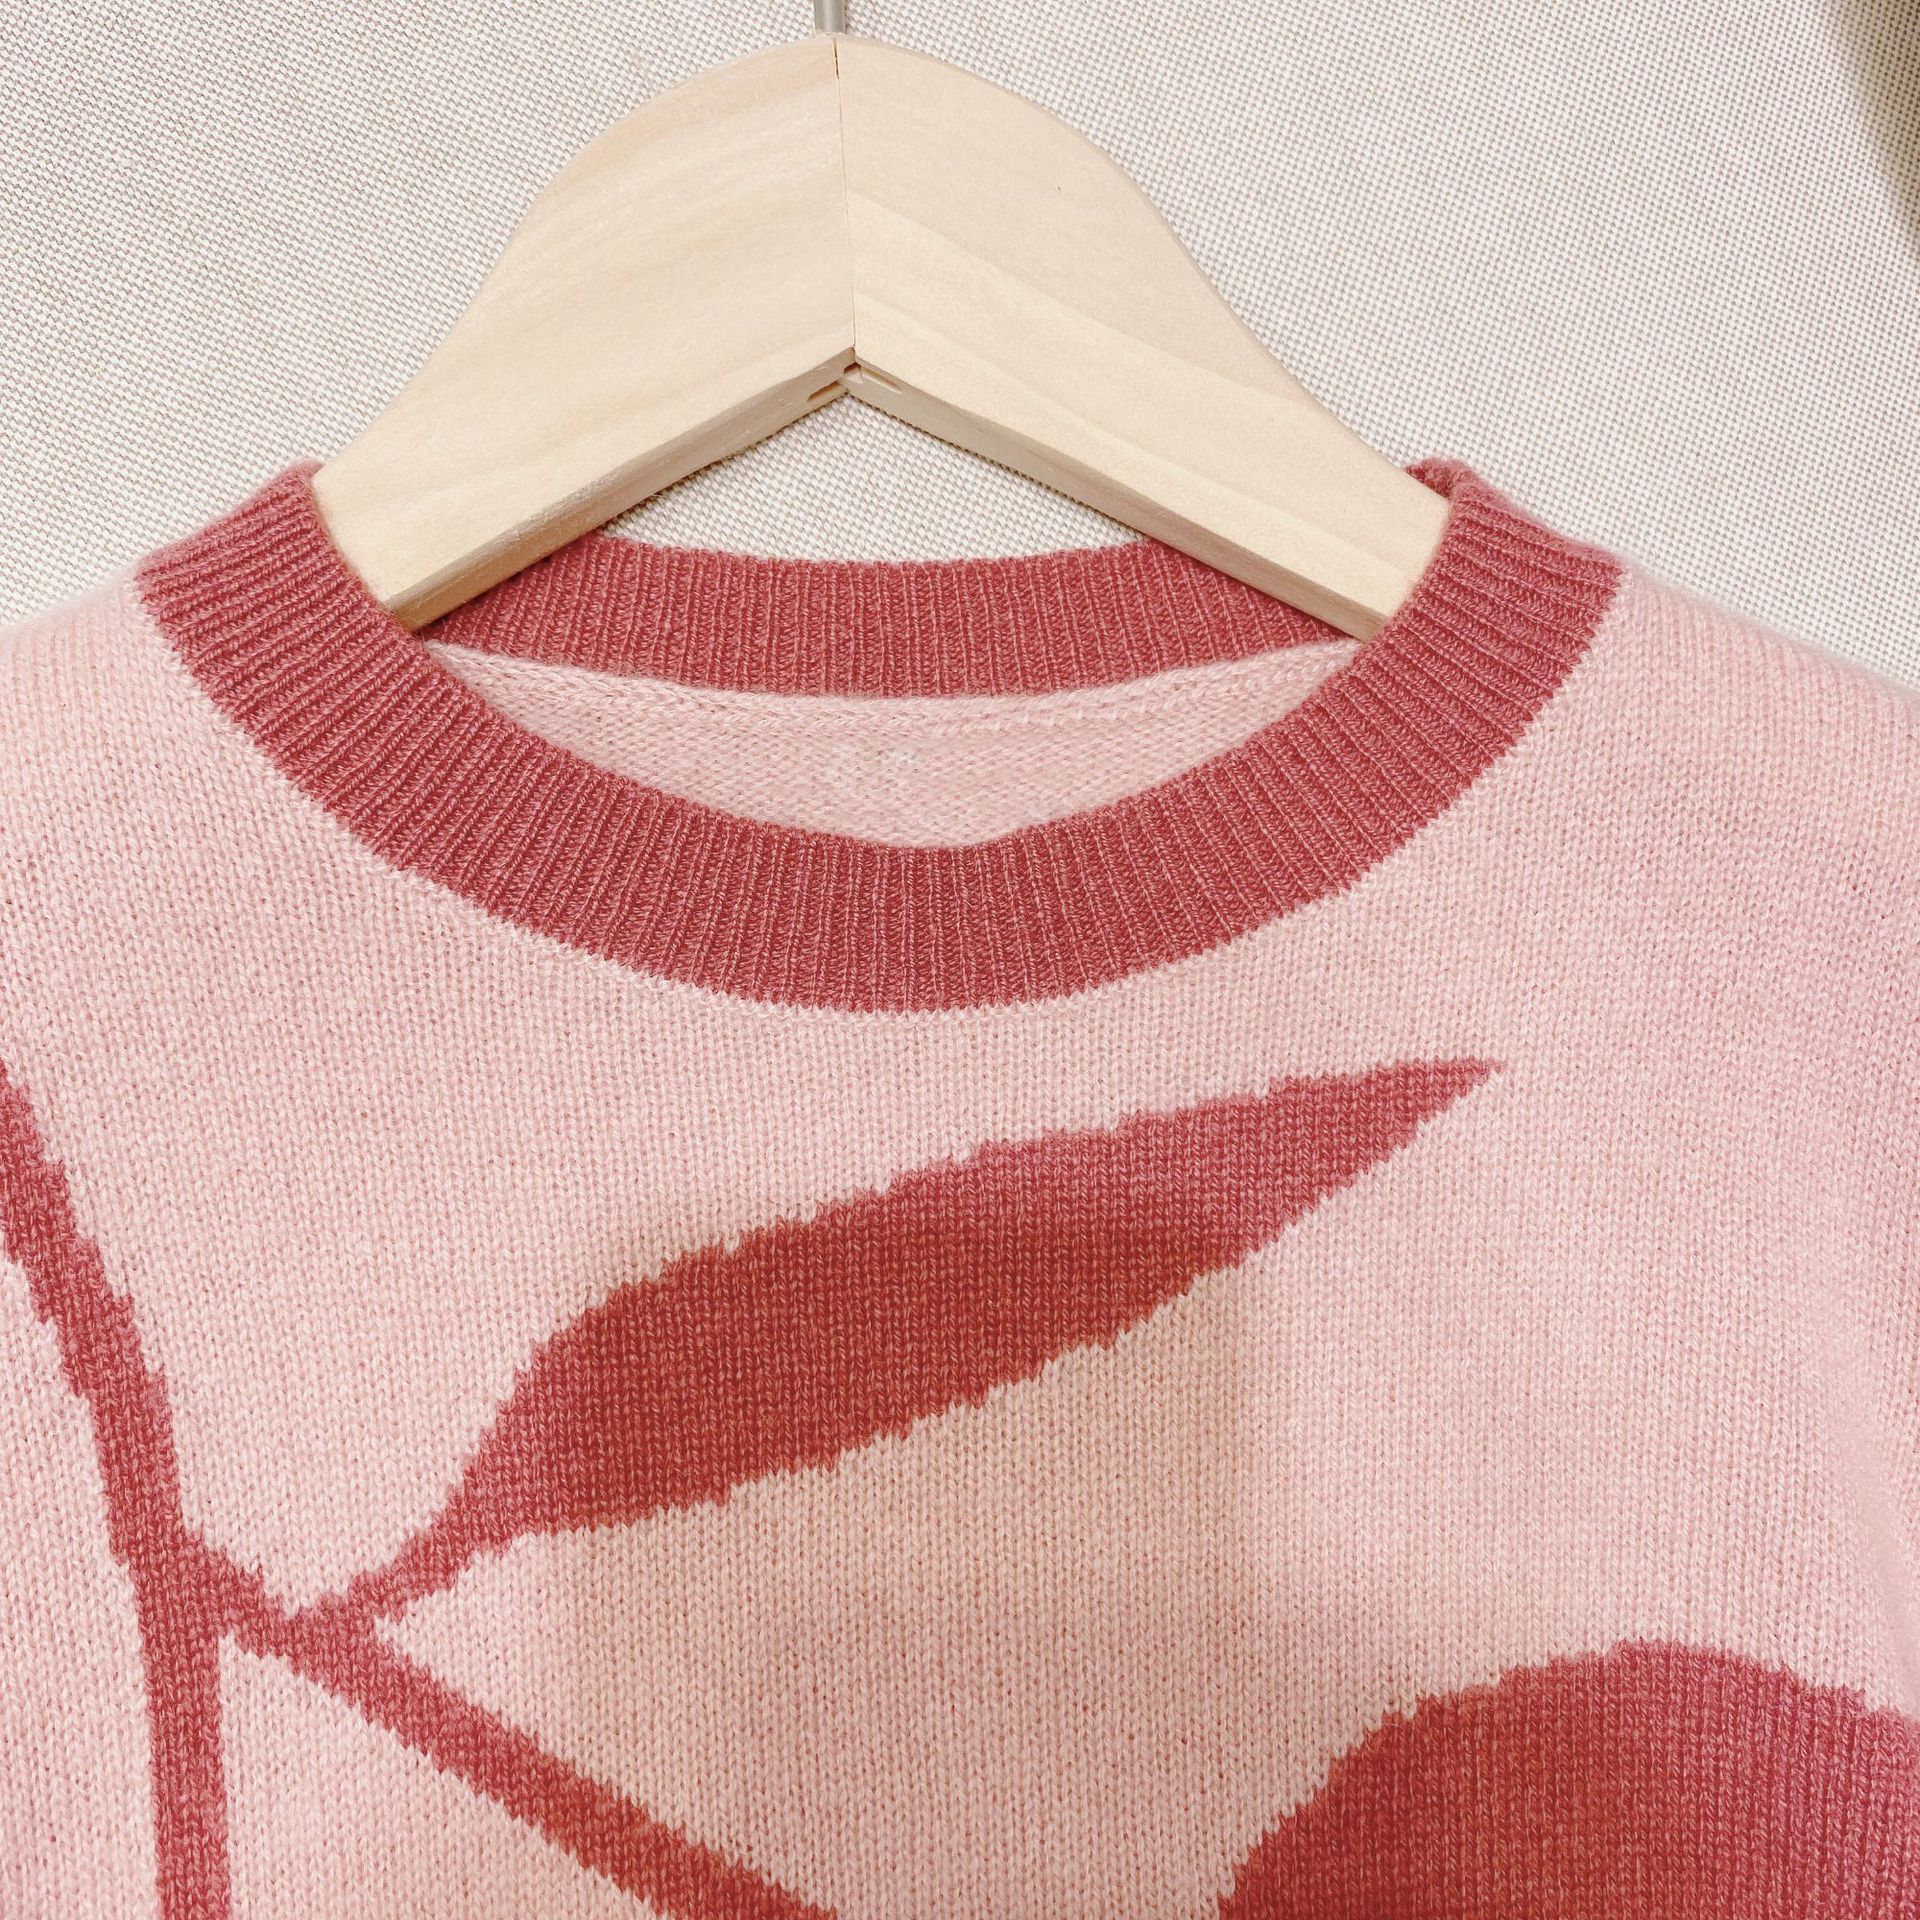 Forsalg oktober 13th piger sweater kirsebær mønster bomuldsuld strikkede varme piger sweatere